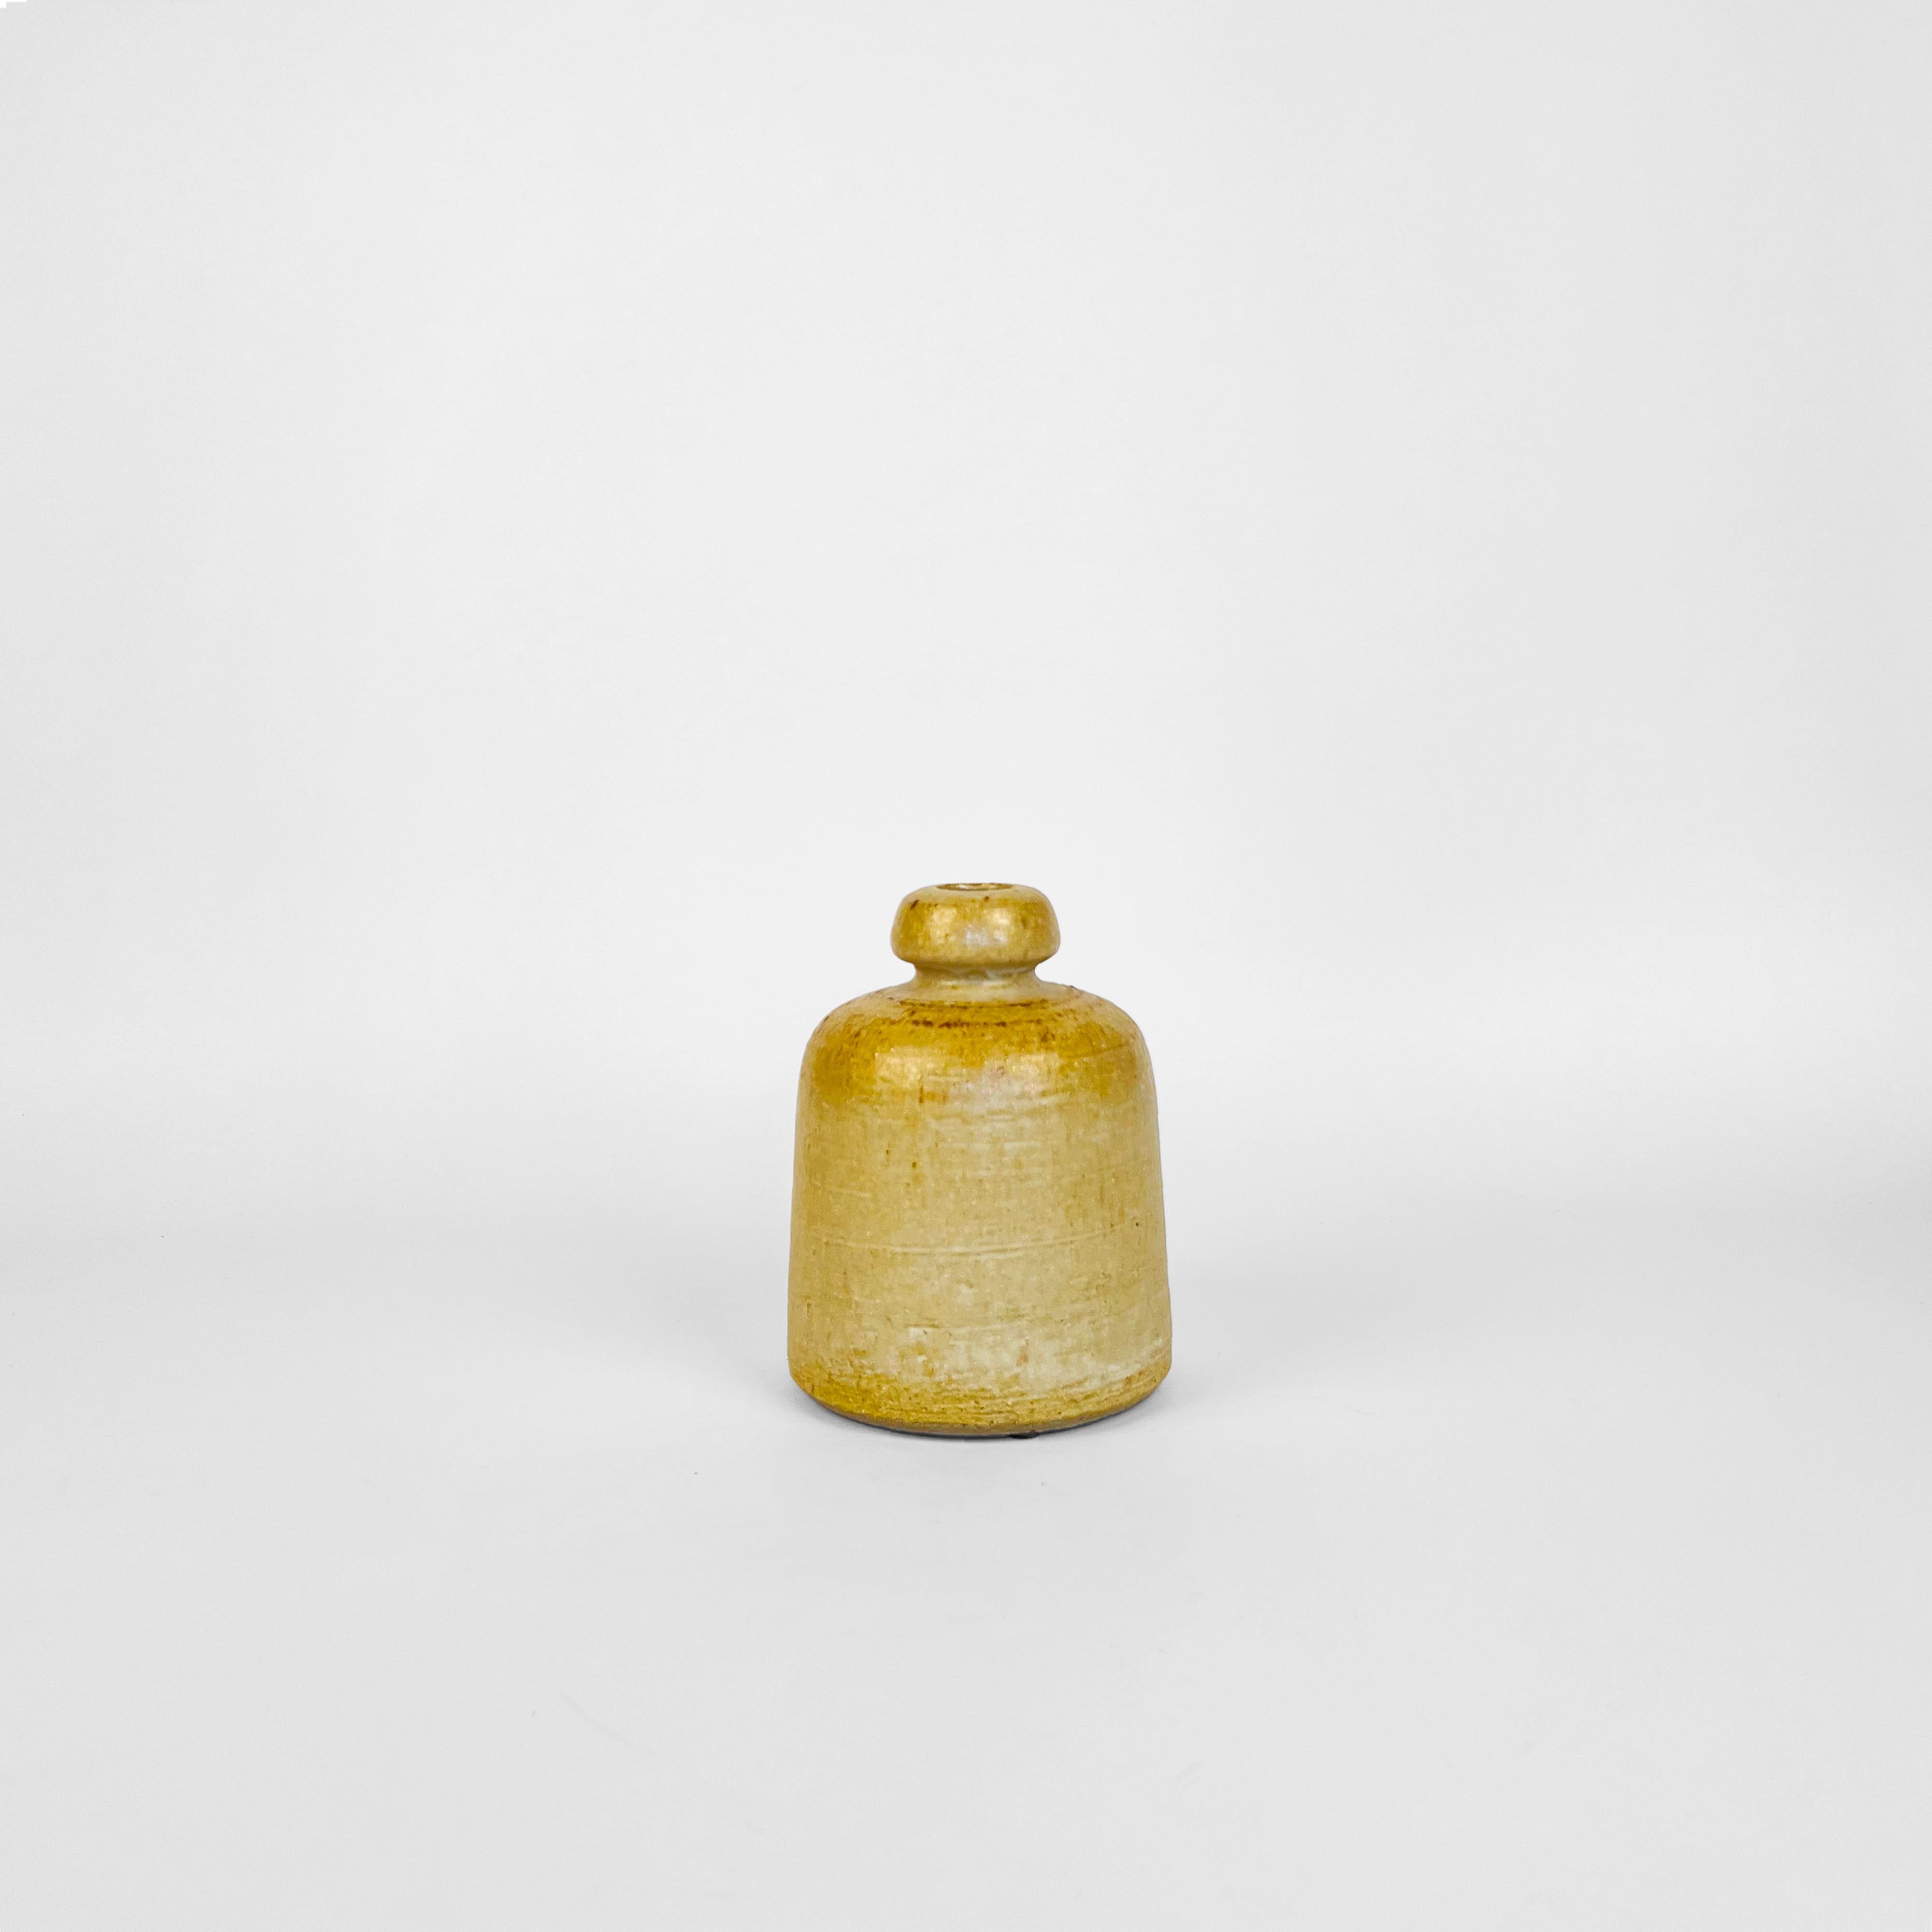 Mitte des Jahrhunderts, Westdeutschland, Studio Vase aber renommierten Keramiker Rudi Stahl.
In strukturierten, hellen Erdtönen mit einem Hauch von Oxid ausgeführt.
Handsigniert vom Künstler auf der Unterseite zusammen mit dem Modellcode (7040/14)